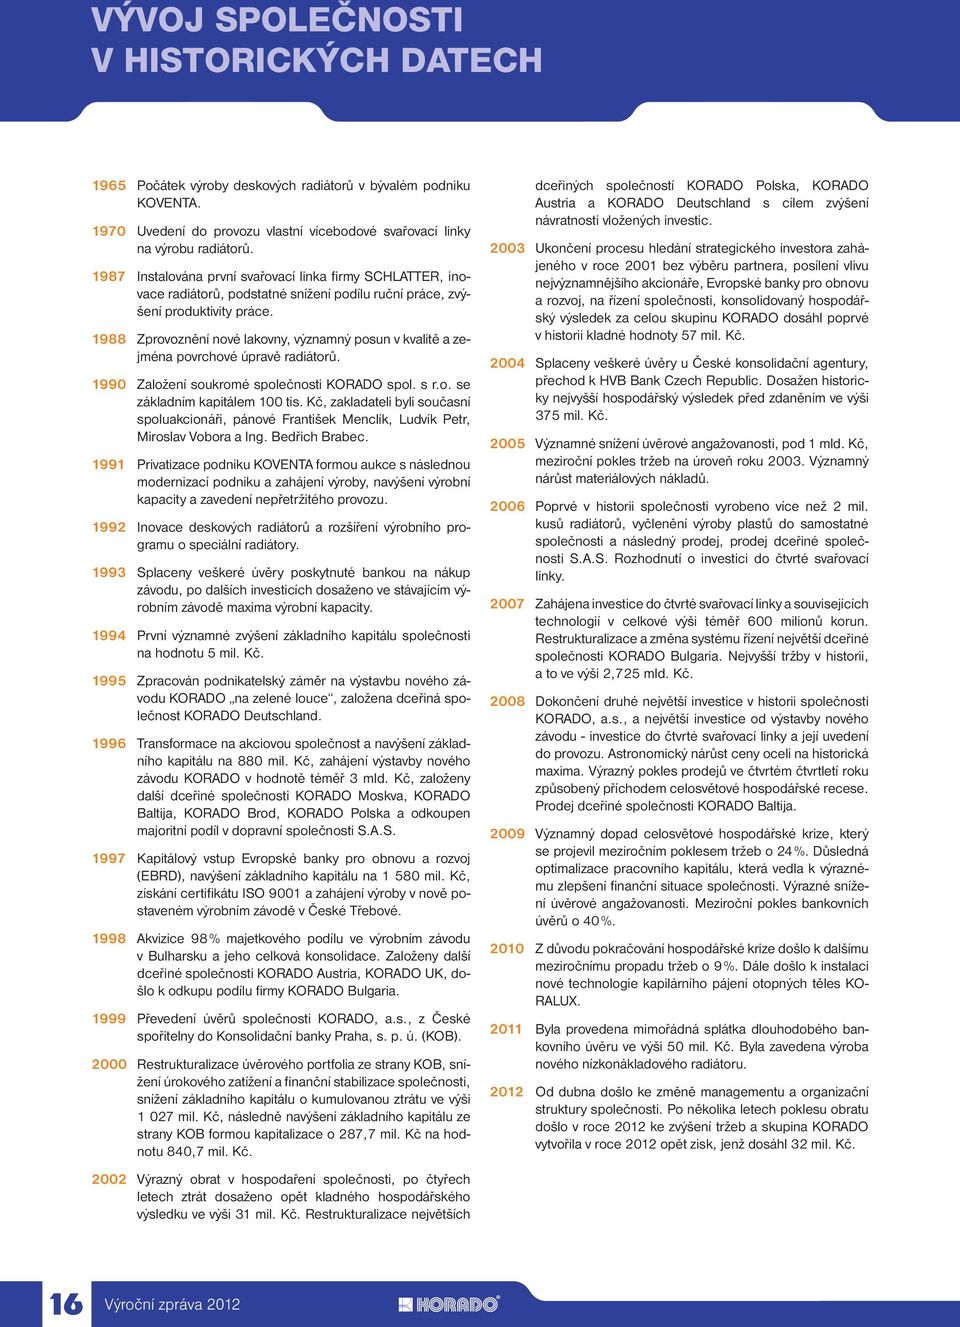 1988 Zprovoznění nové lakovny, významný posun v kvalitě a zejména povrchové úpravě radiátorů. 1990 Založení soukromé společnosti KORADO spol. s r.o. se základním kapitálem 100 tis.